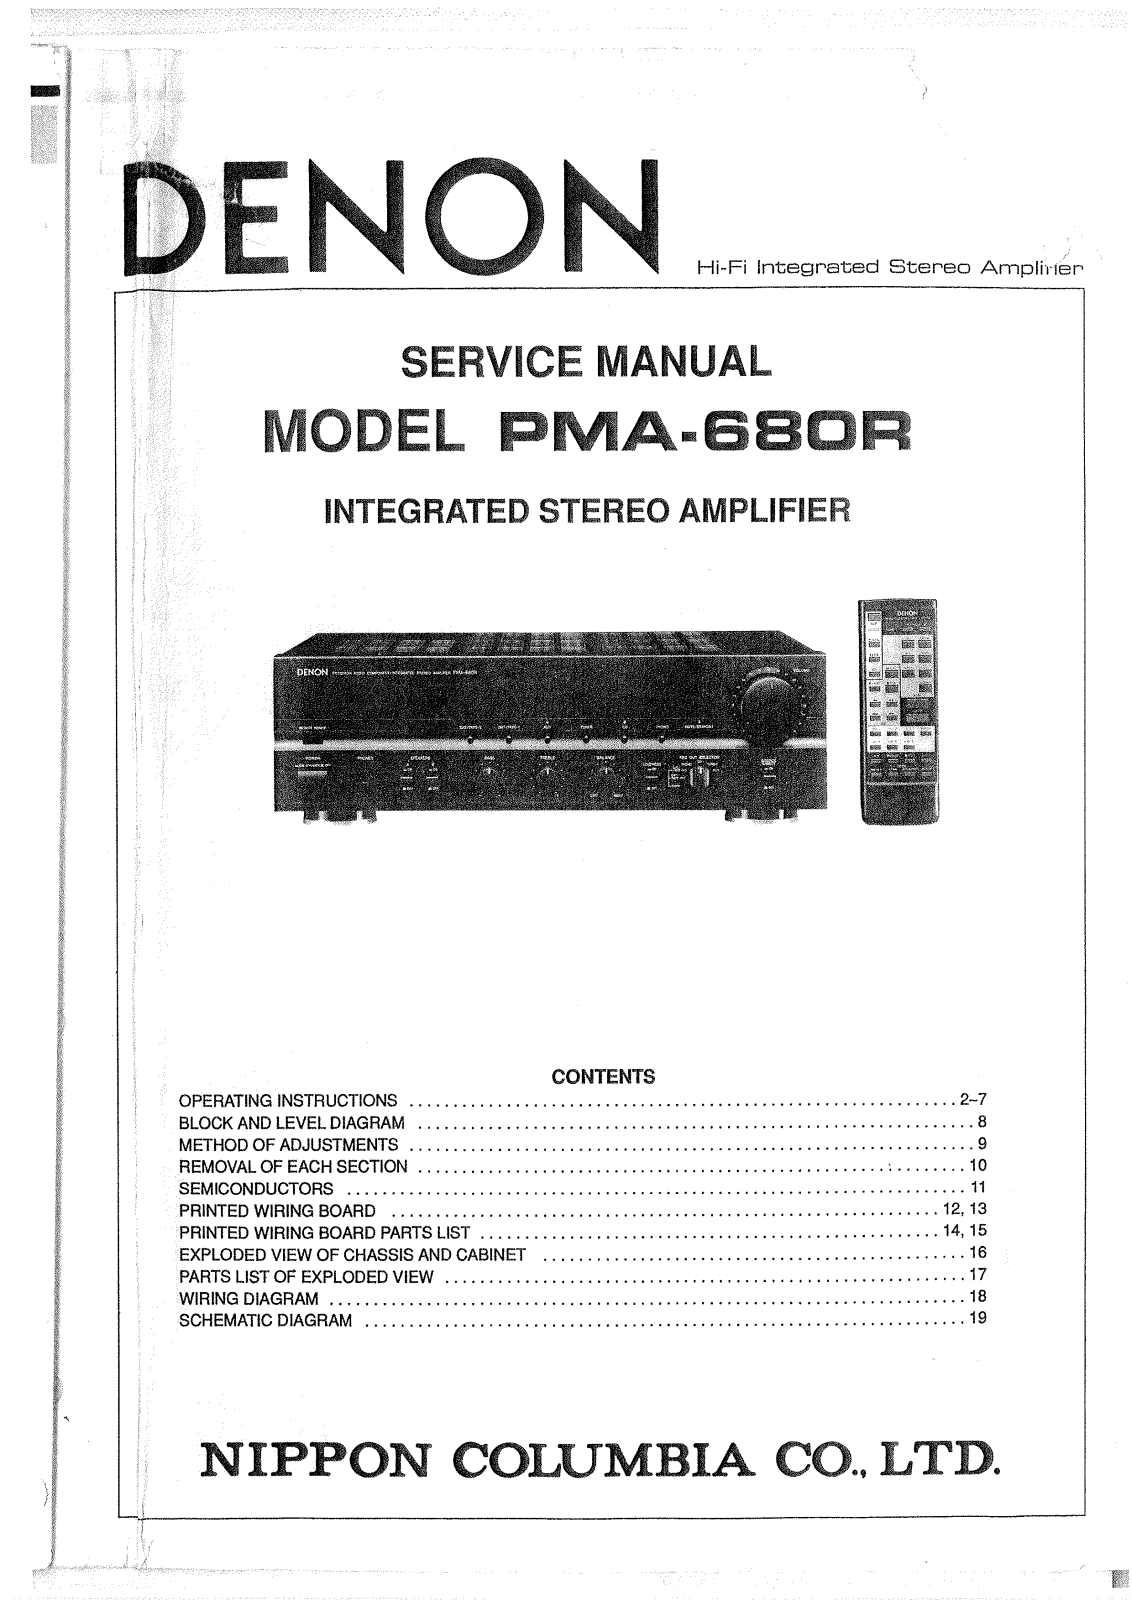 Denon PMA-680R Service Manual